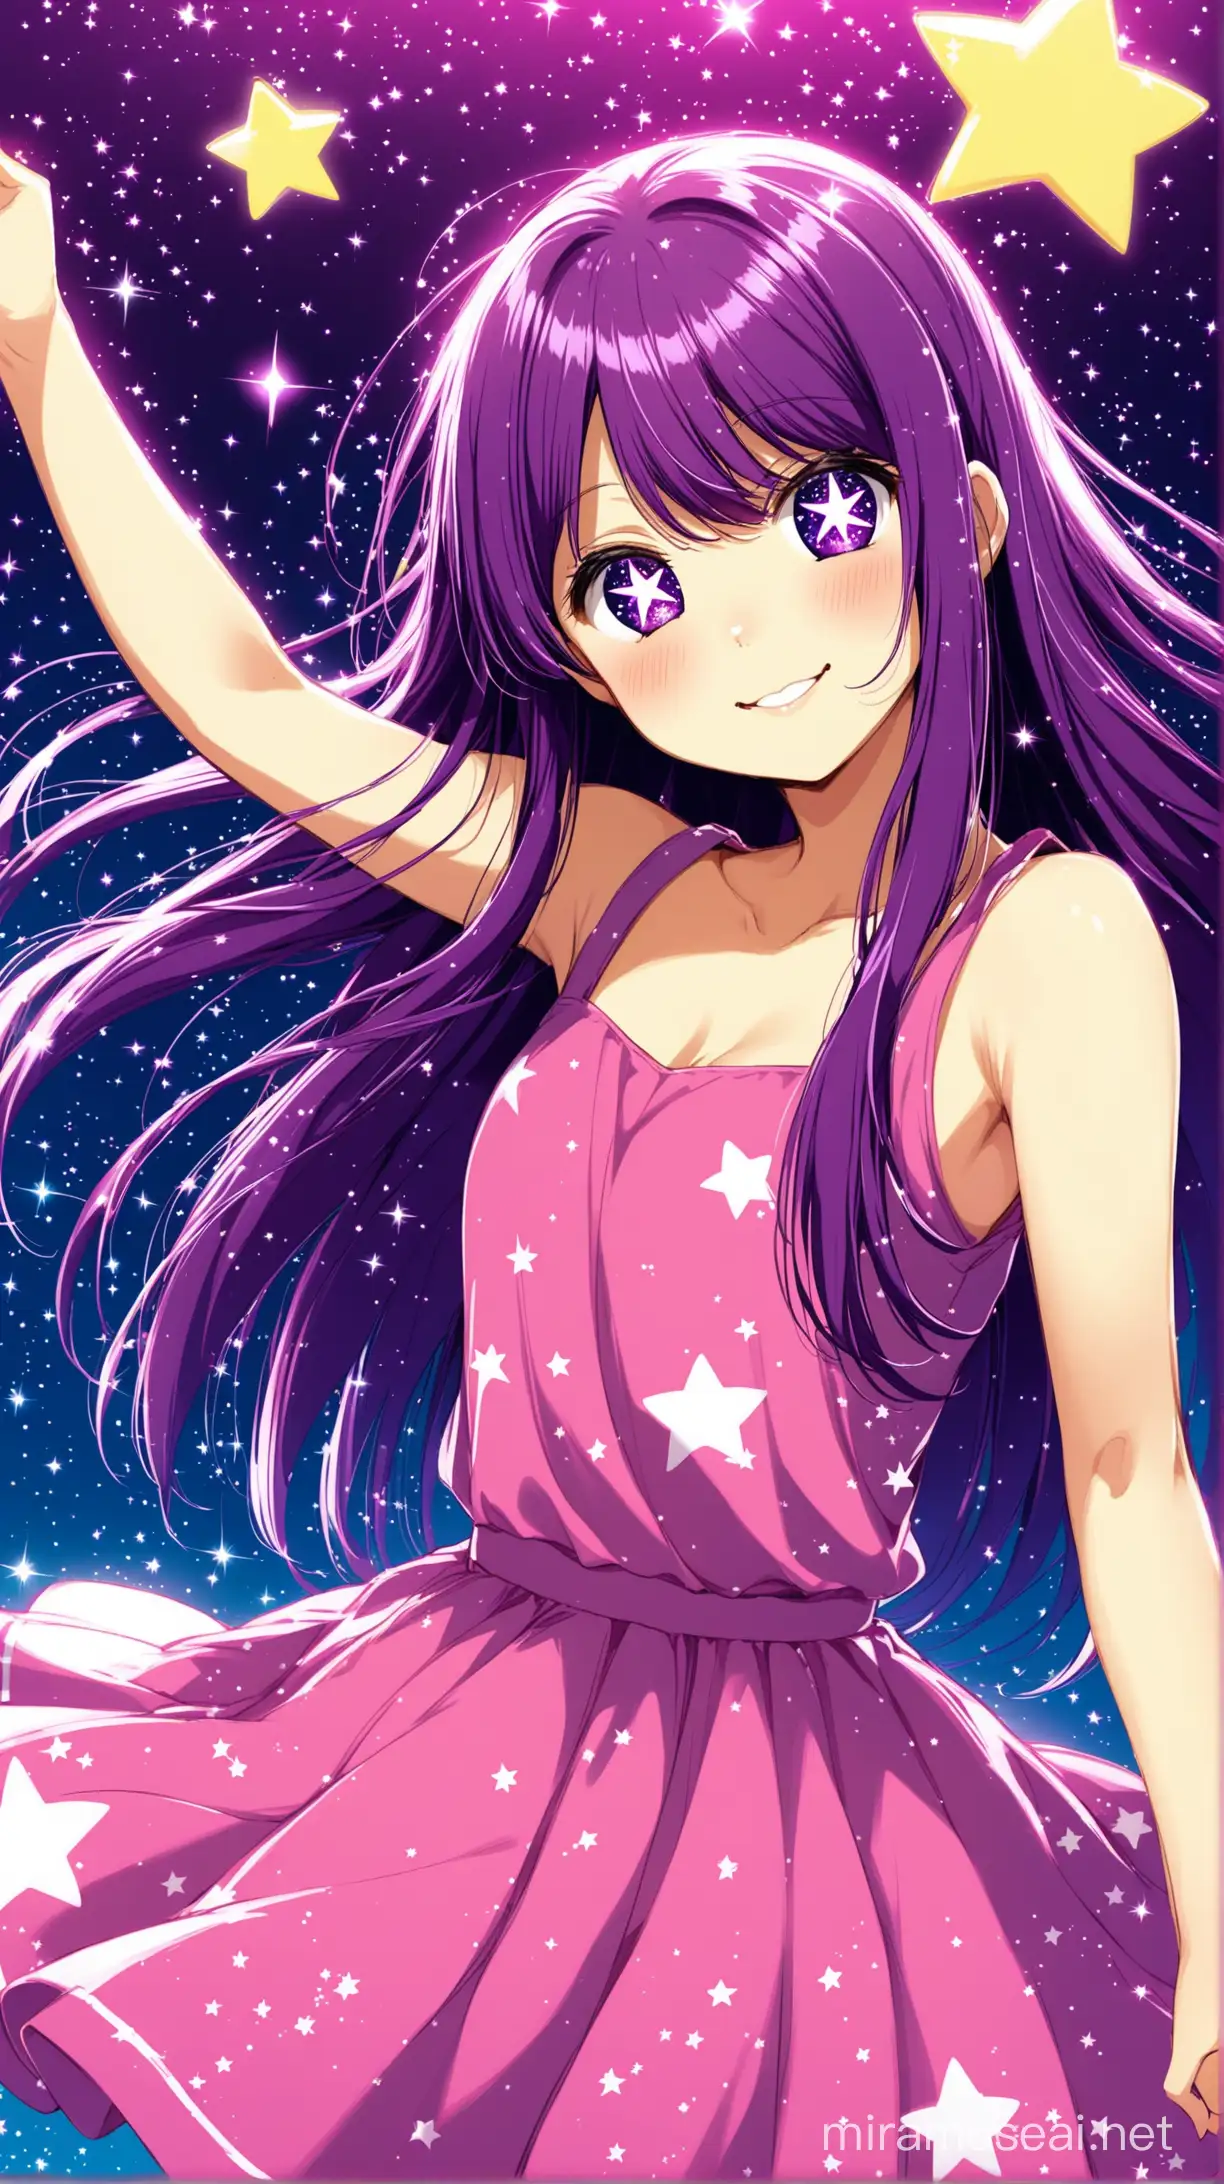 Ai Hoshino, "Oshi no ko", long purple hair, dancing, cute, stars on eyes